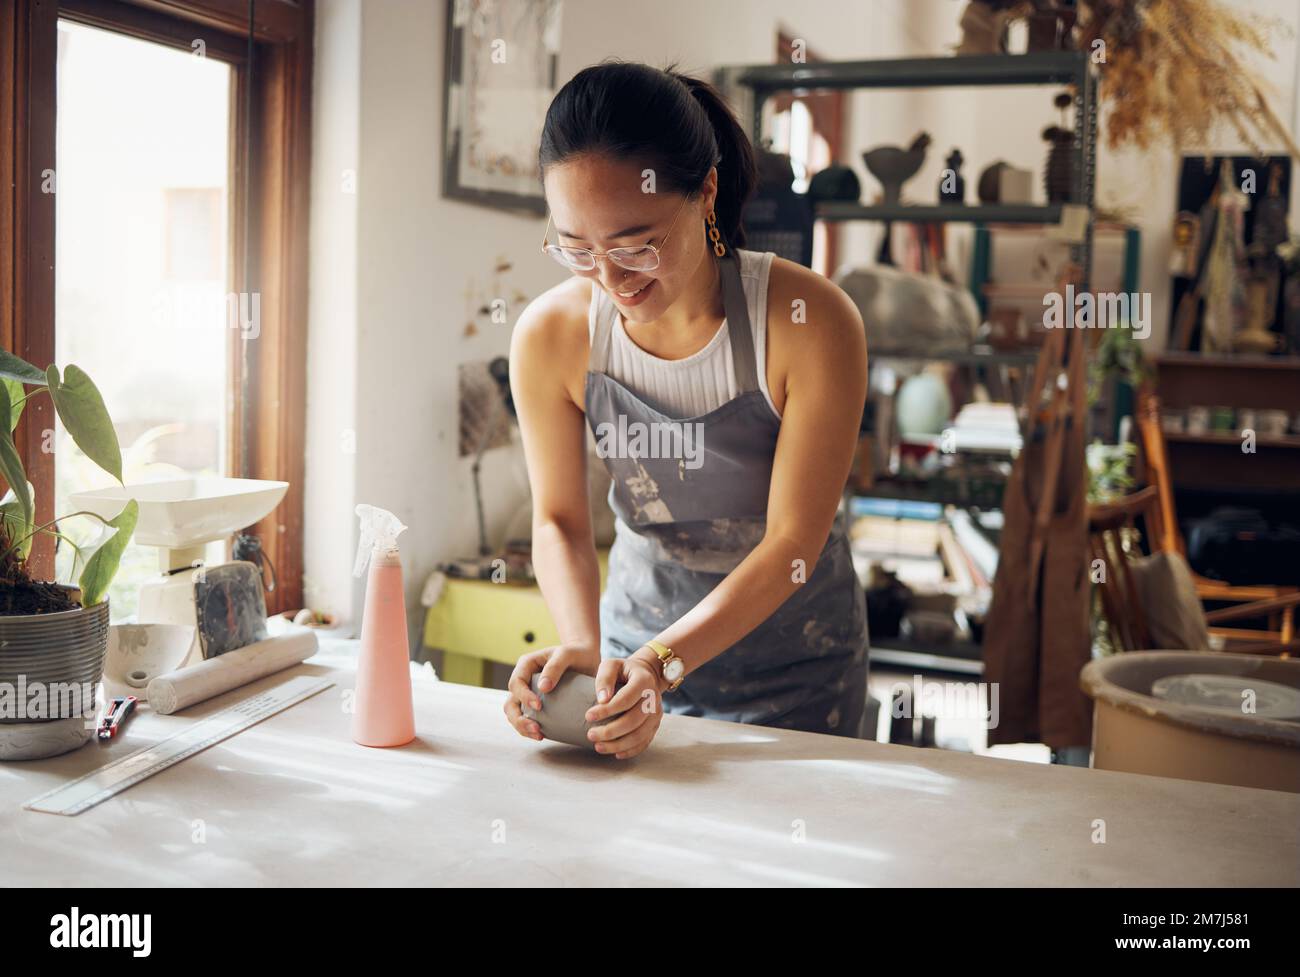 Kleinunternehmen, Kunst- und Töpferin-Unternehmerin in in Werkstatt mit Ton für Kreativität und Inspiration. Kreative asiatische Frau, die bei Artistic arbeitet Stockfoto